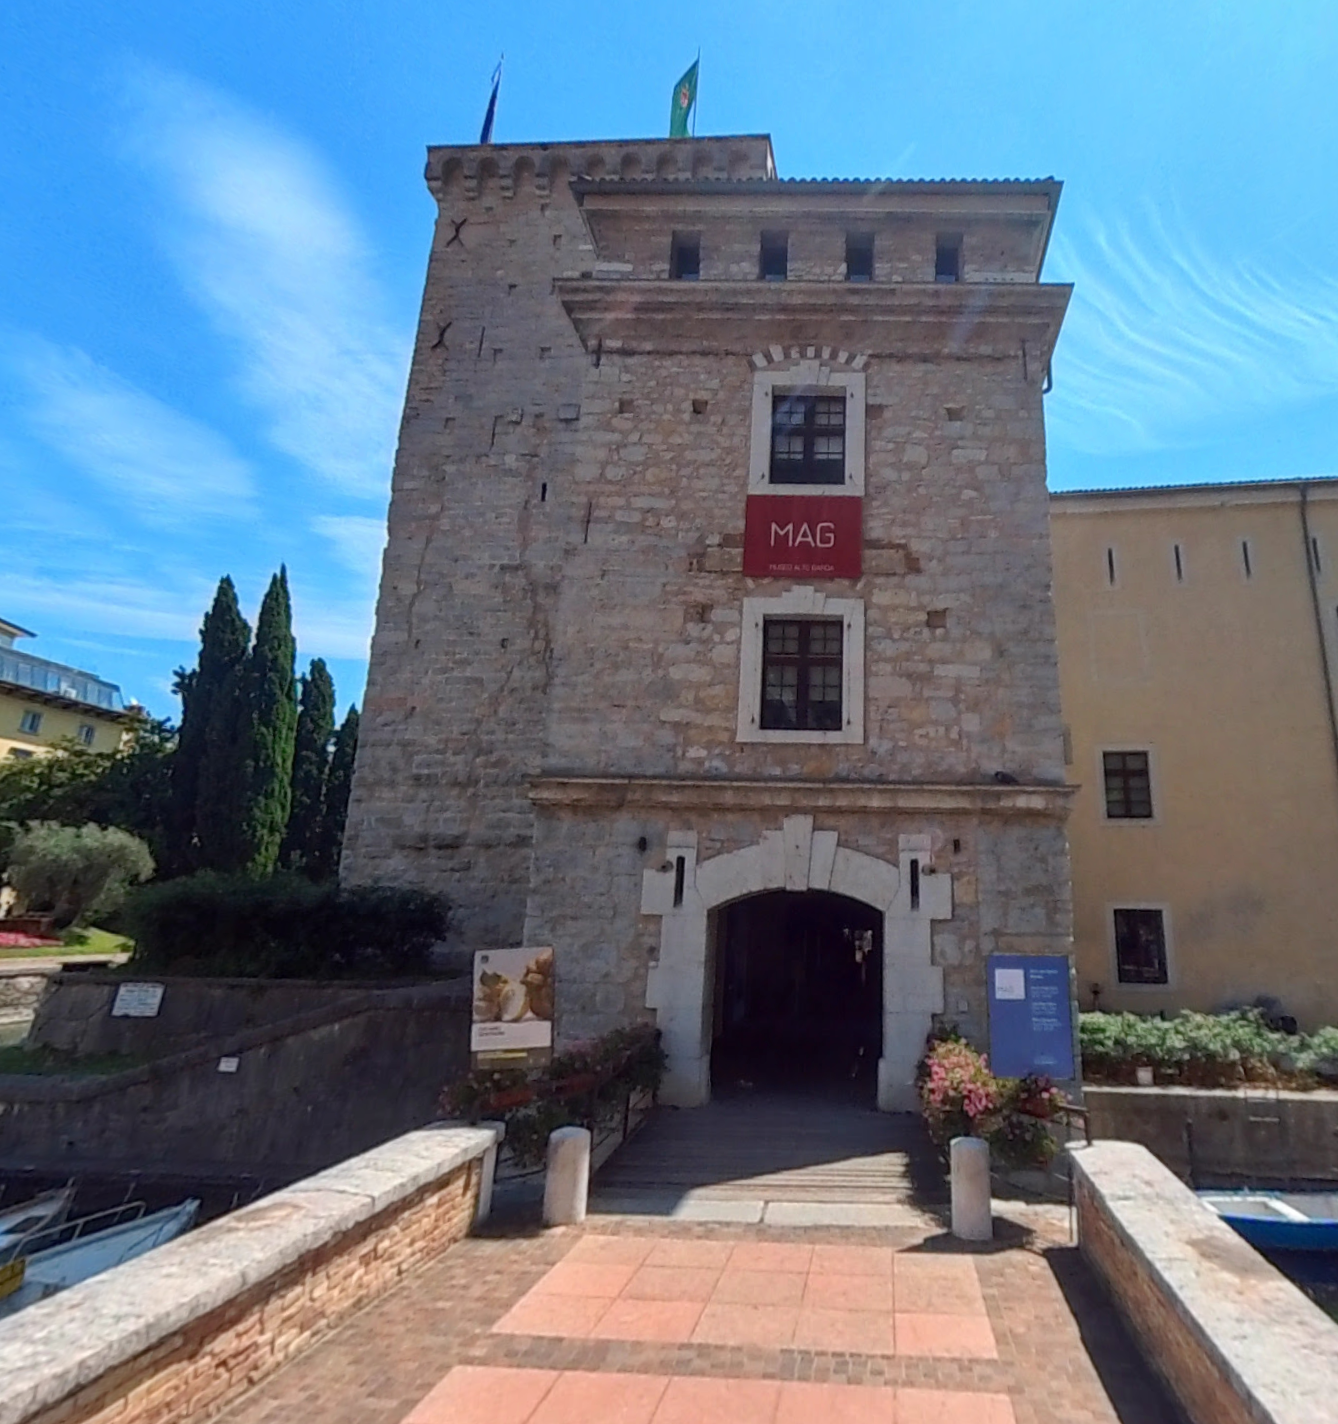 MAG Museo Alto Garda by Google Earth